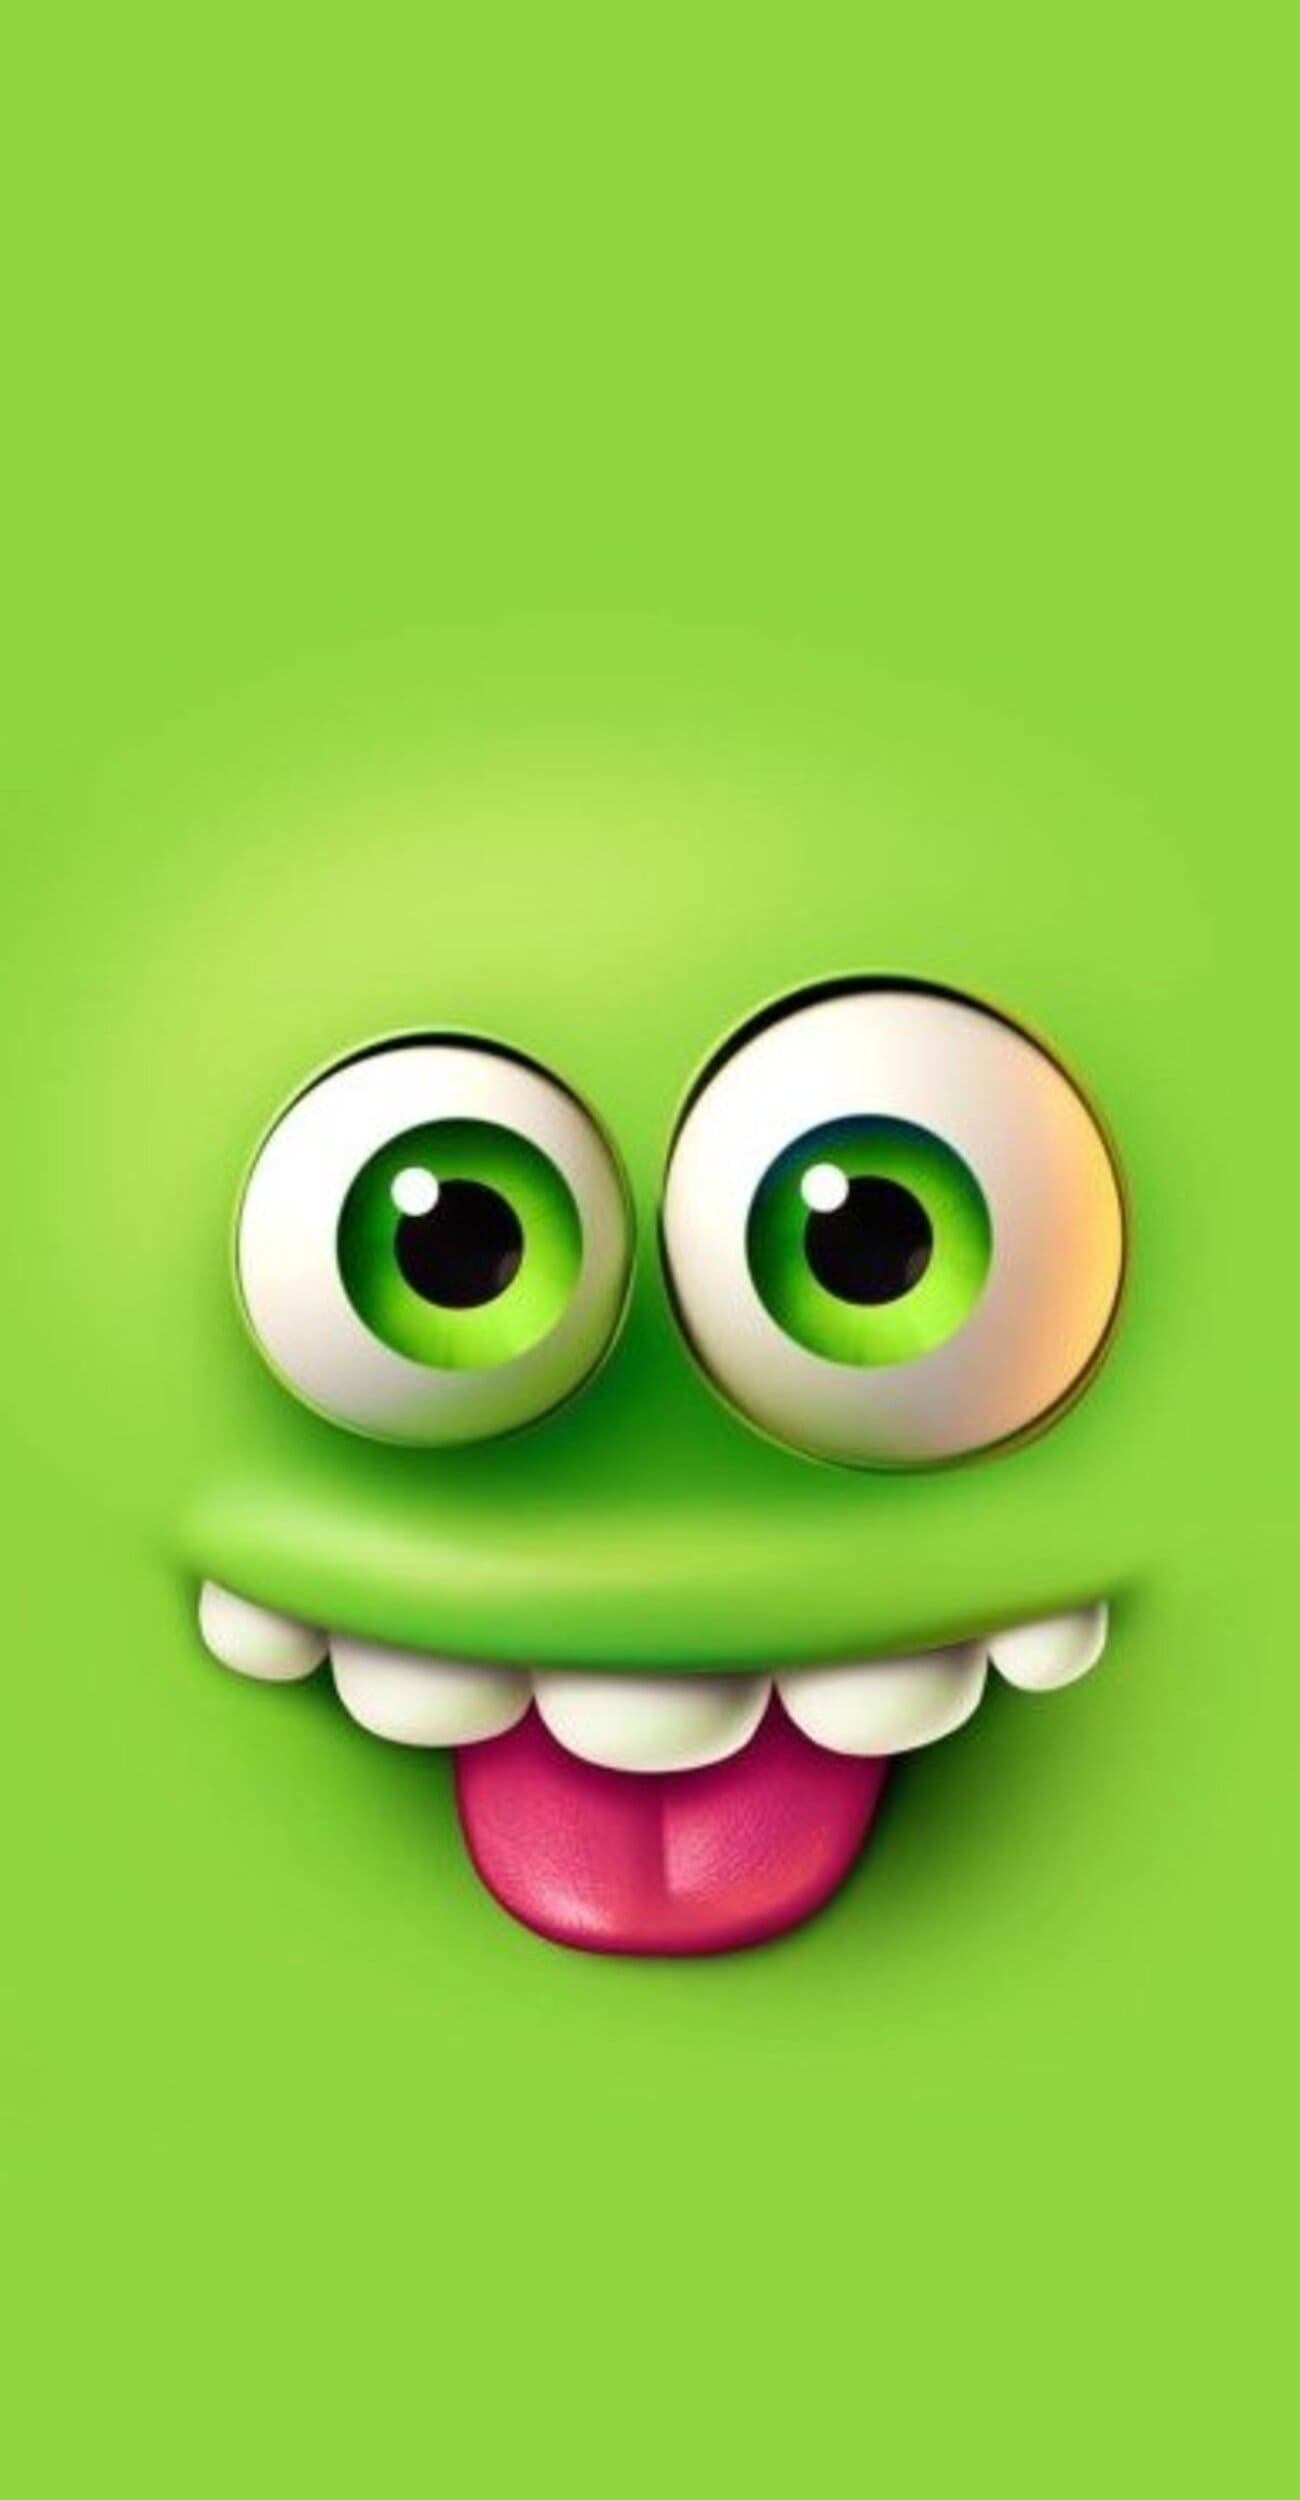 خلفية ايفون خضراء وجه مجنون مضحك بدقة عالية 4K